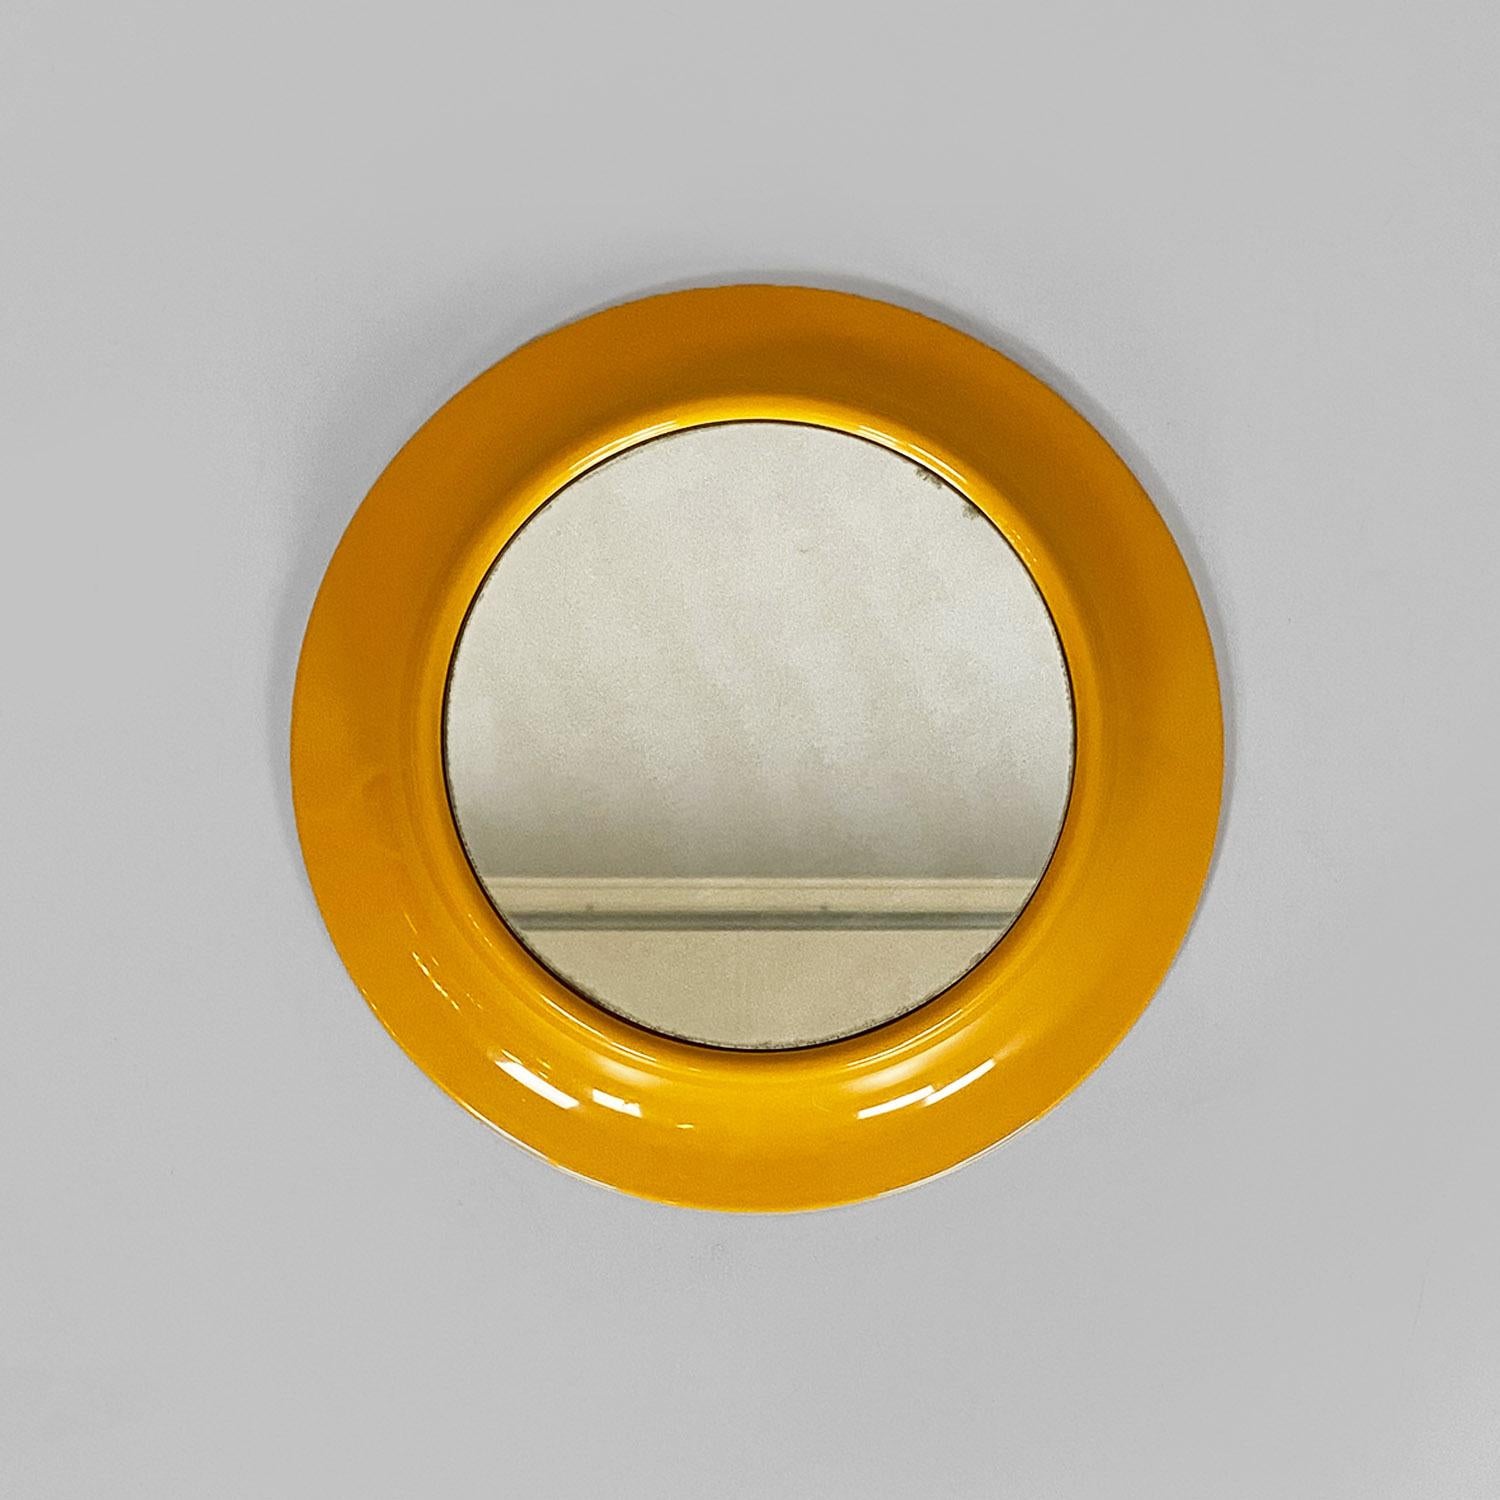 Moderner italienischer runder gelber ockerfarbener Kunststoffspiegel von Cattaneo Italien, 1980er Jahre
Runder Spiegel Modell 080, klein, mit rundem ockergelbem Kunststoffrahmen.
Markenname Cattaneo, hergestellt in Italien um 1980.
Guter Zustand,